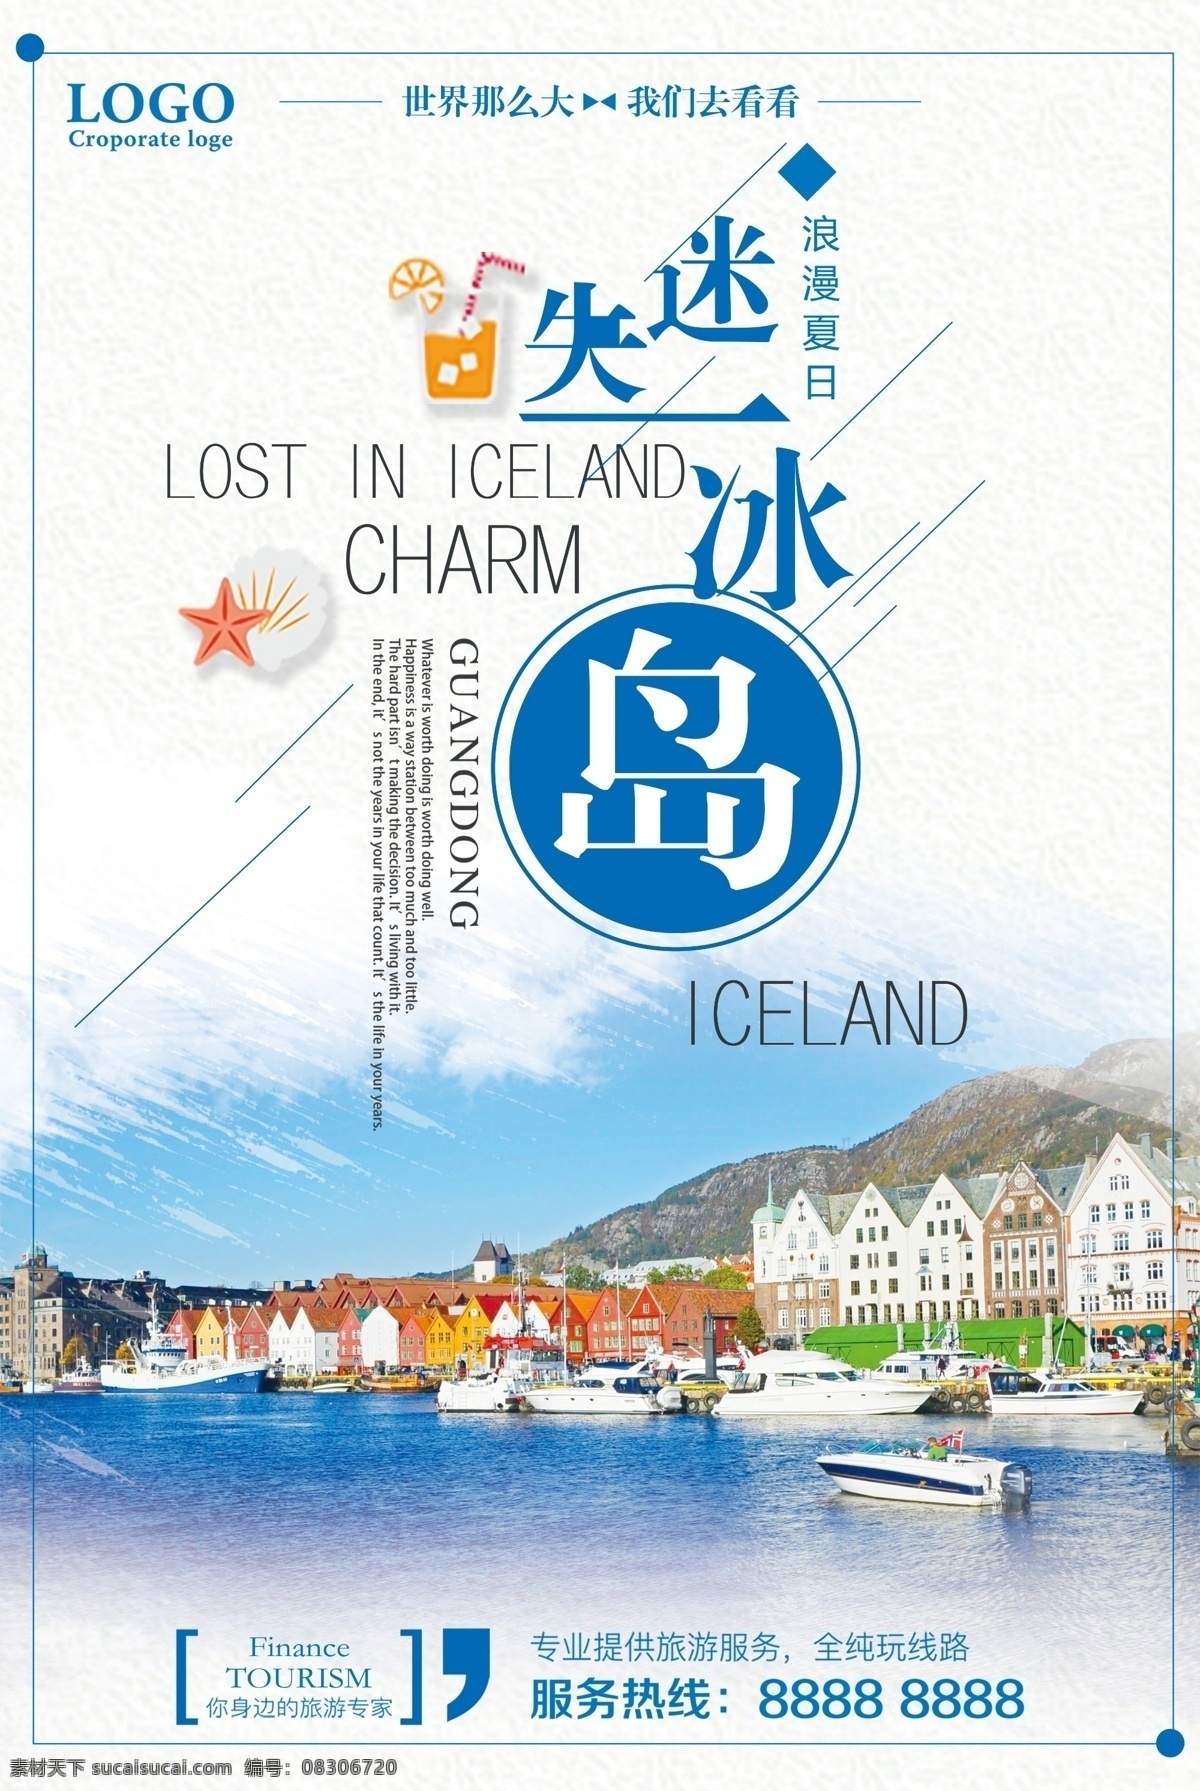 迷失 冰岛 旅游 海报 北欧 北欧风景 旅游宣传海报 旅行社海报 北欧冰岛 畅游冰岛 冰岛地标建筑 绿色冰岛 冰岛风景 冰岛景观 冰岛自然风景 冰岛风光 北欧风光 冰岛印象 魅力冰岛 冰岛旅游